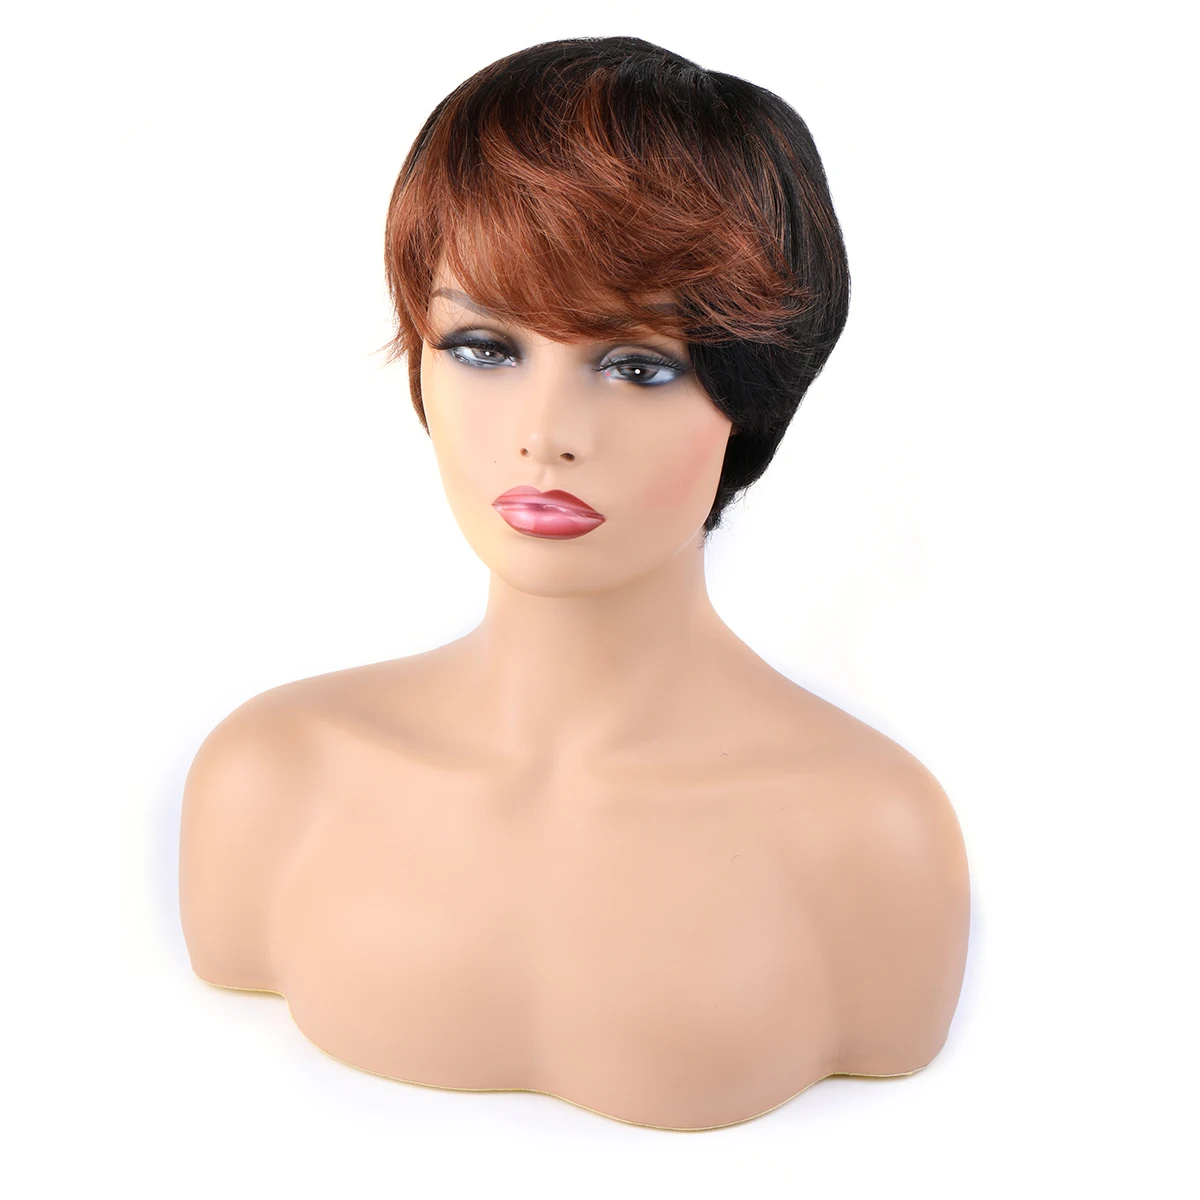 

Bliss Short Human Hair Wigs Brazilian 100% Human Hair Wigs Mixed Colours Pixie Cut Wigs Full Mechanism Cheap Human Wig for Women